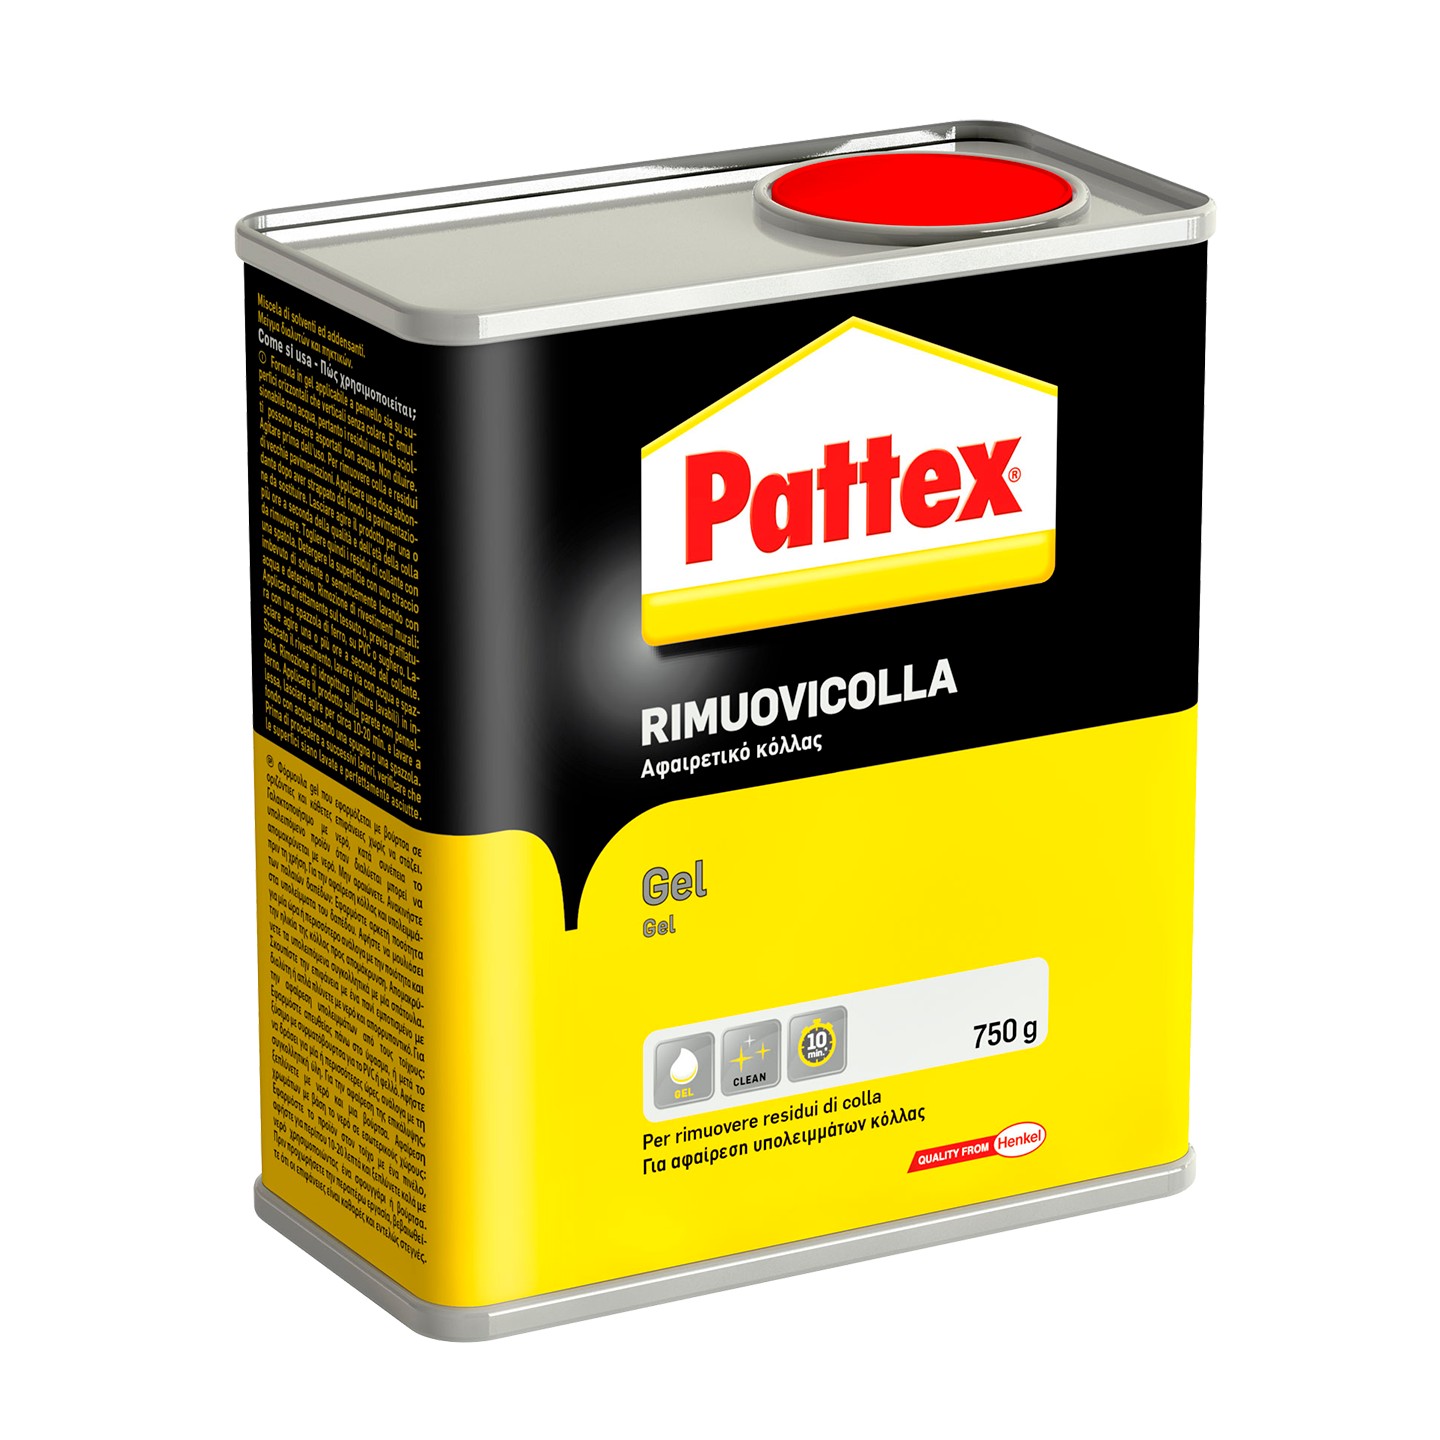 Pattex 1715112, Pâte, Colle PVA (acétate de polyvinyl), Bouteille, Noir,  Blanc, Jaune, Transparent, 250 g